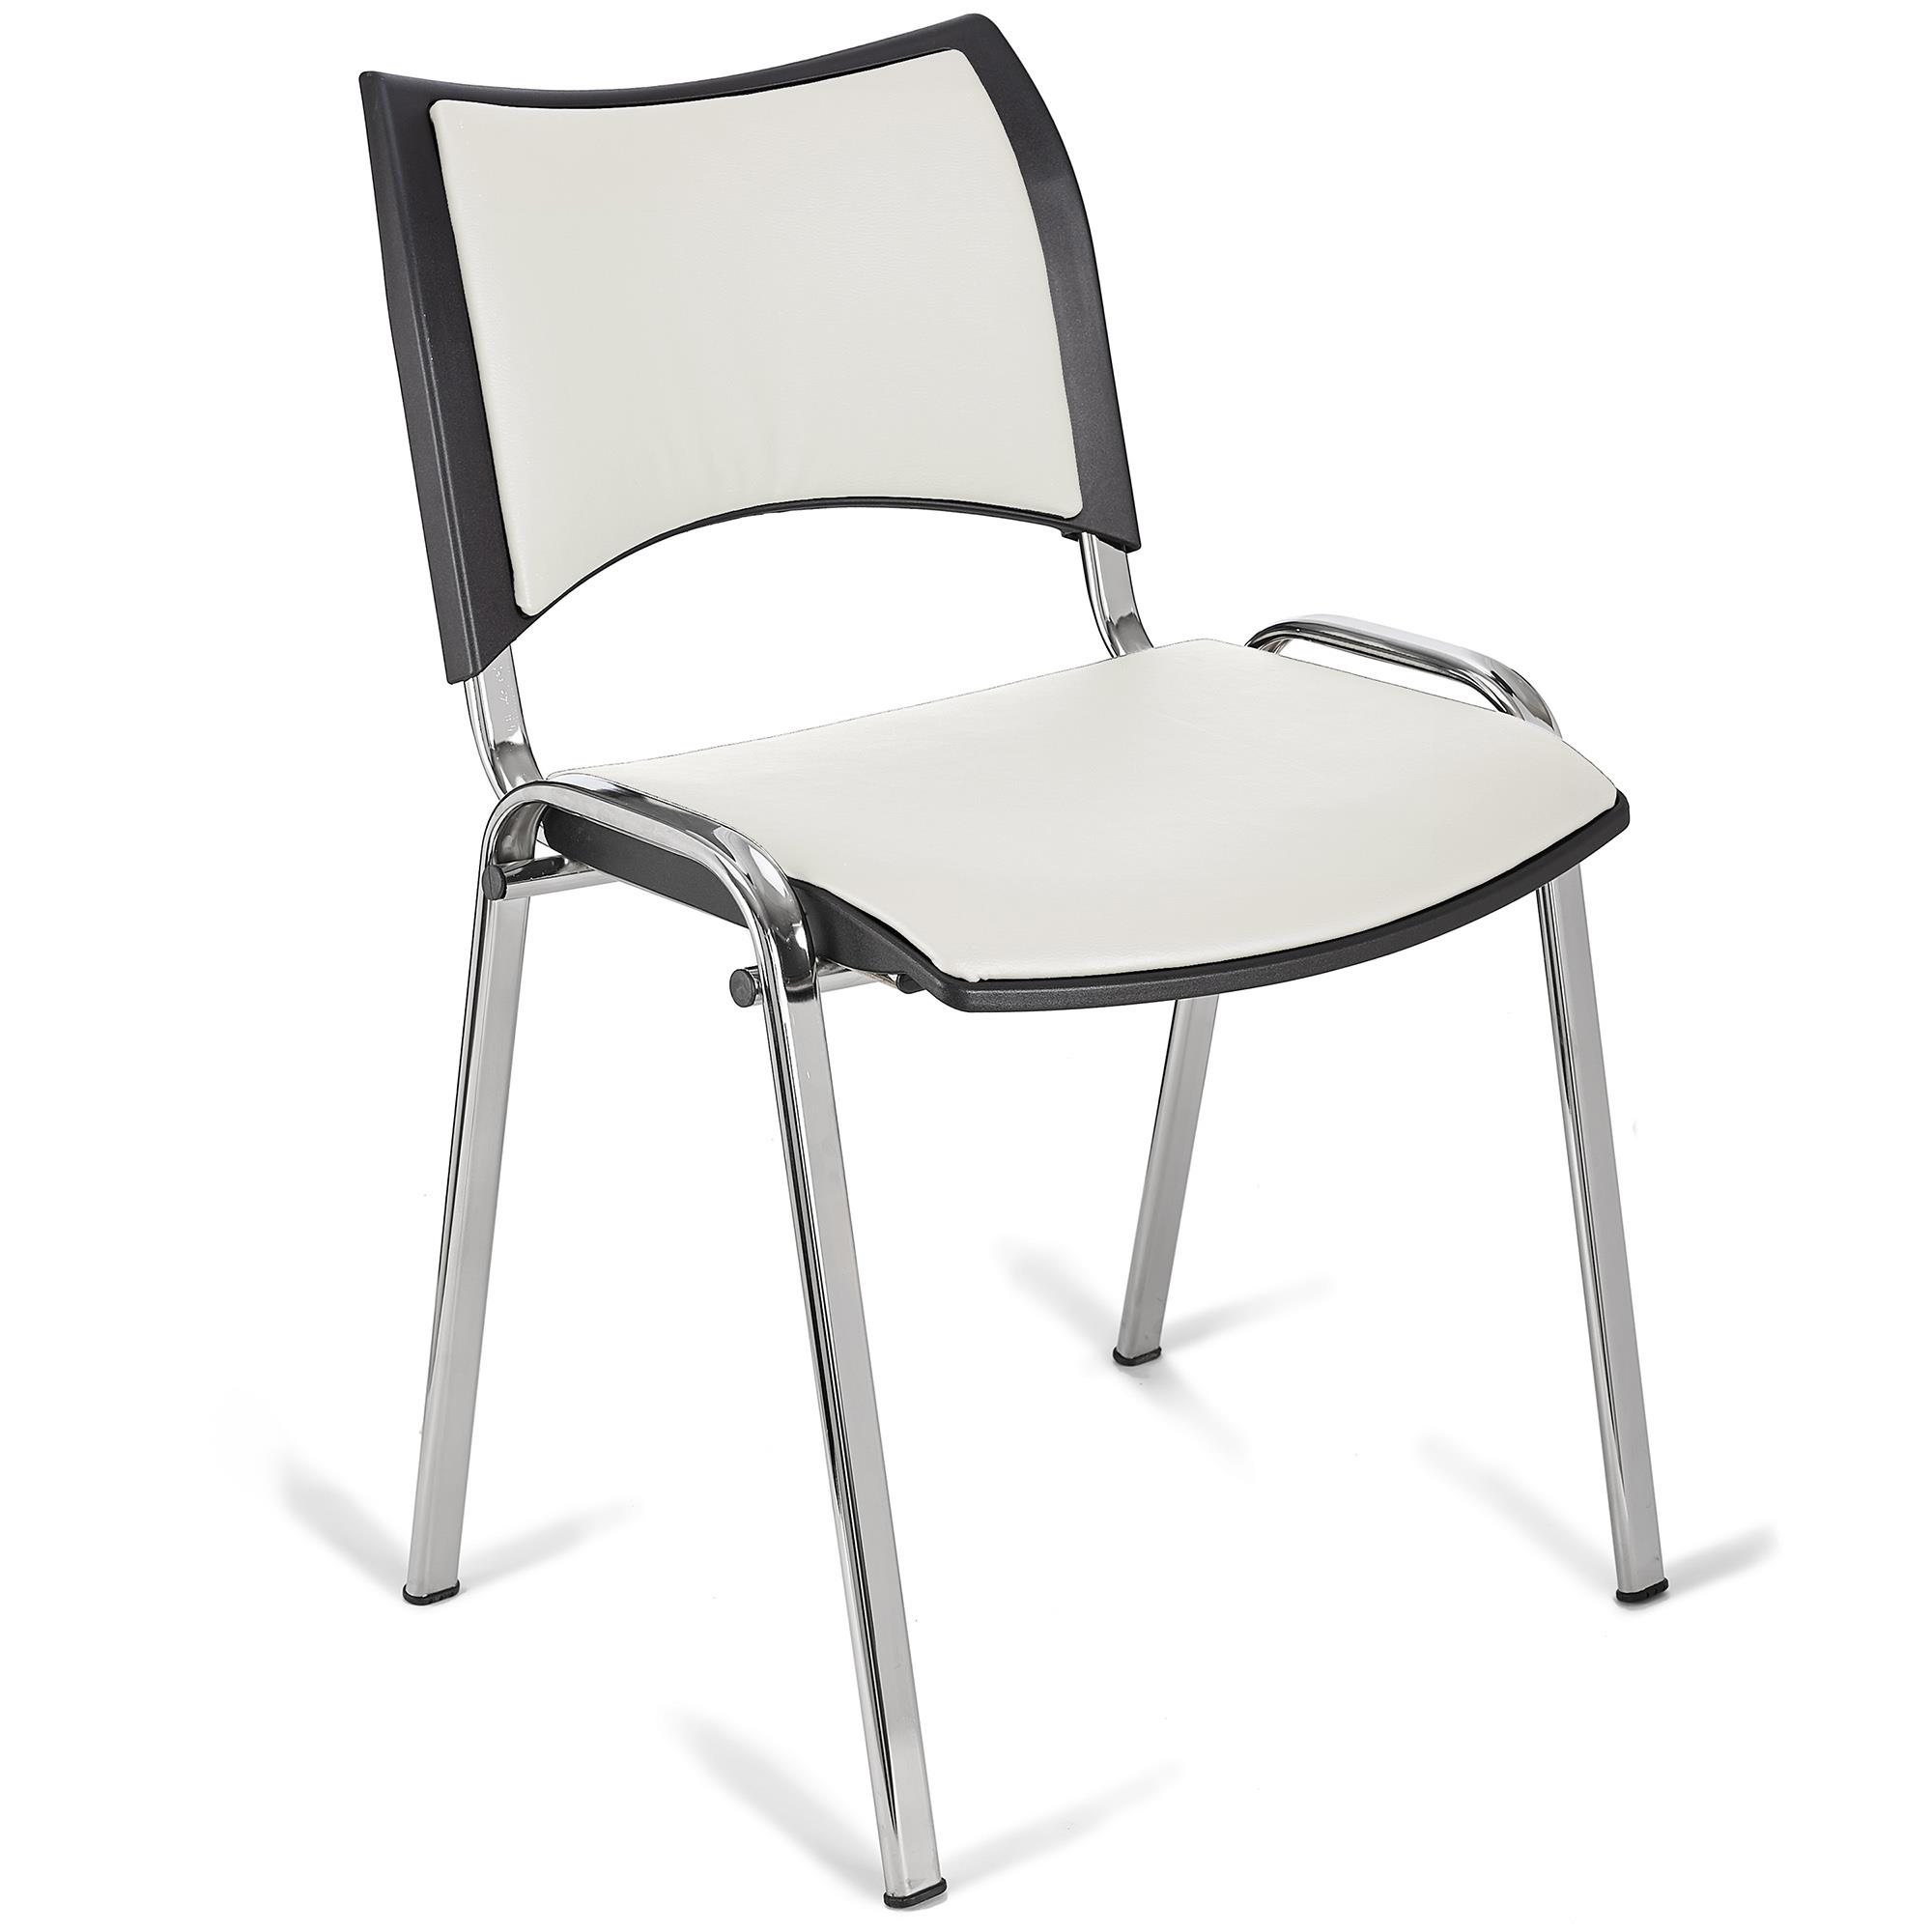 Cadeira de Visita ROMEL PELE, Prática e Empilhável, Pernas Cromadas, Branco